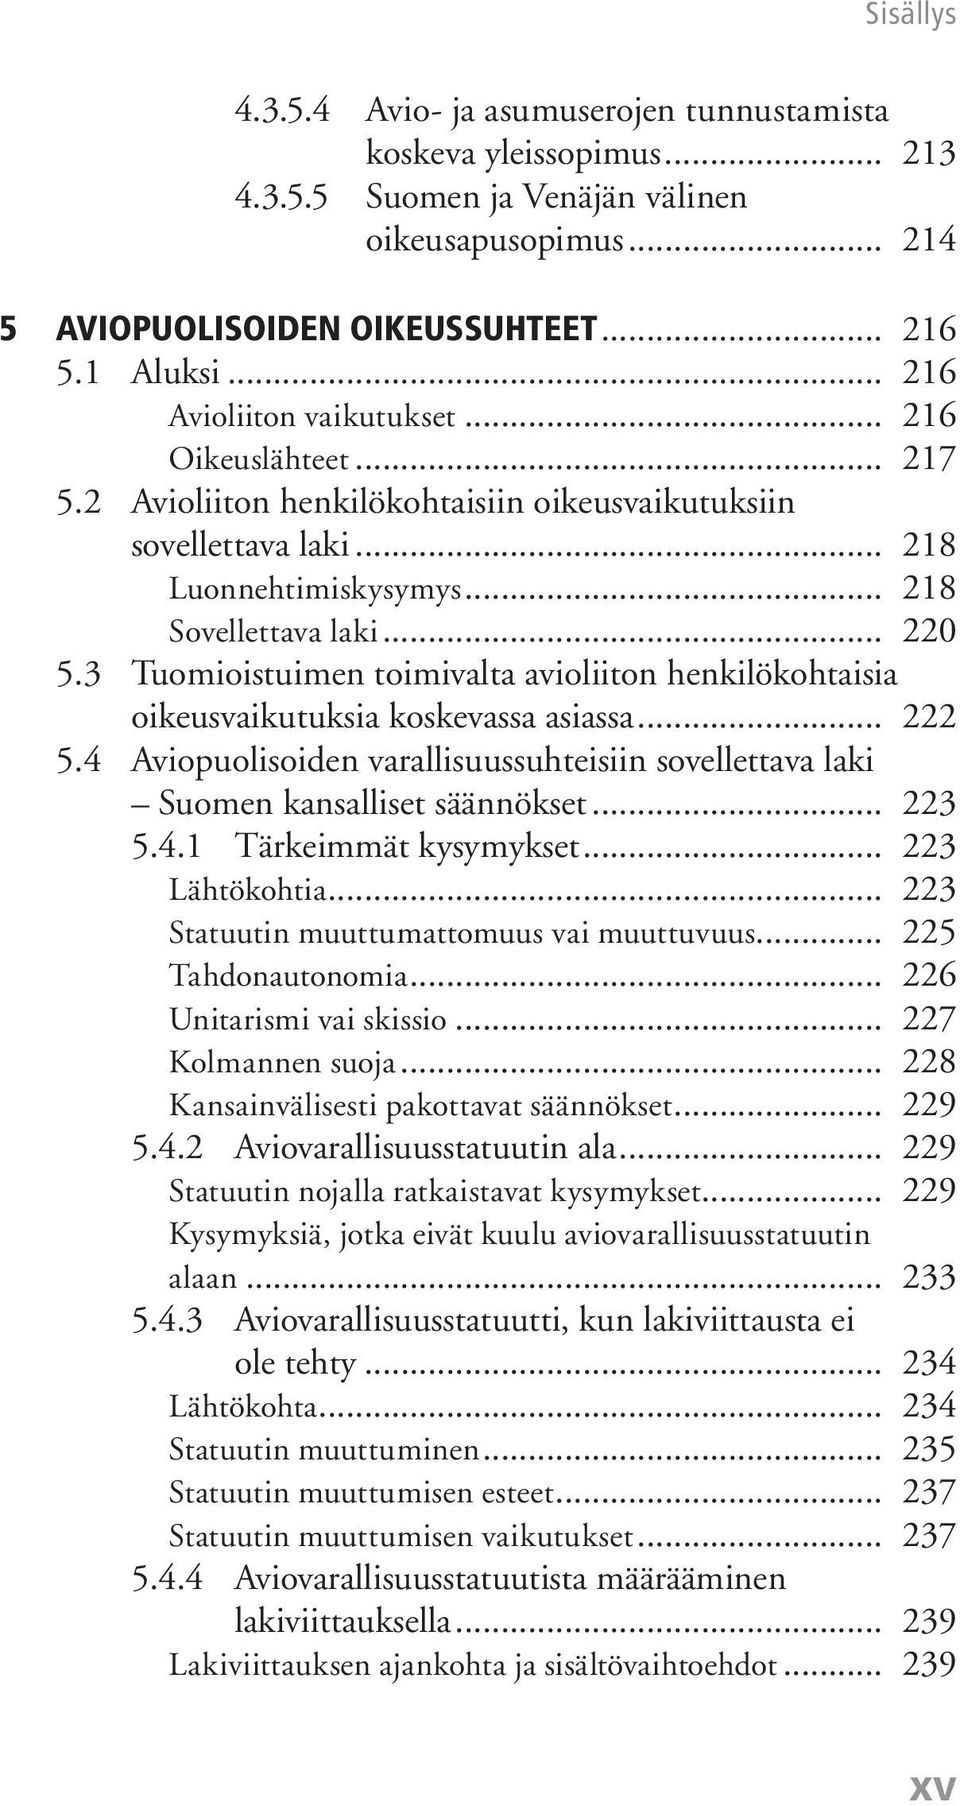 3 Tuomioistuimen toimivalta avioliiton henkilökohtaisia oikeusvaikutuksia koskevassa asiassa... 222 5.4 Aviopuolisoiden varallisuussuhteisiin sovellettava laki Suomen kansalliset säännökset... 223 5.